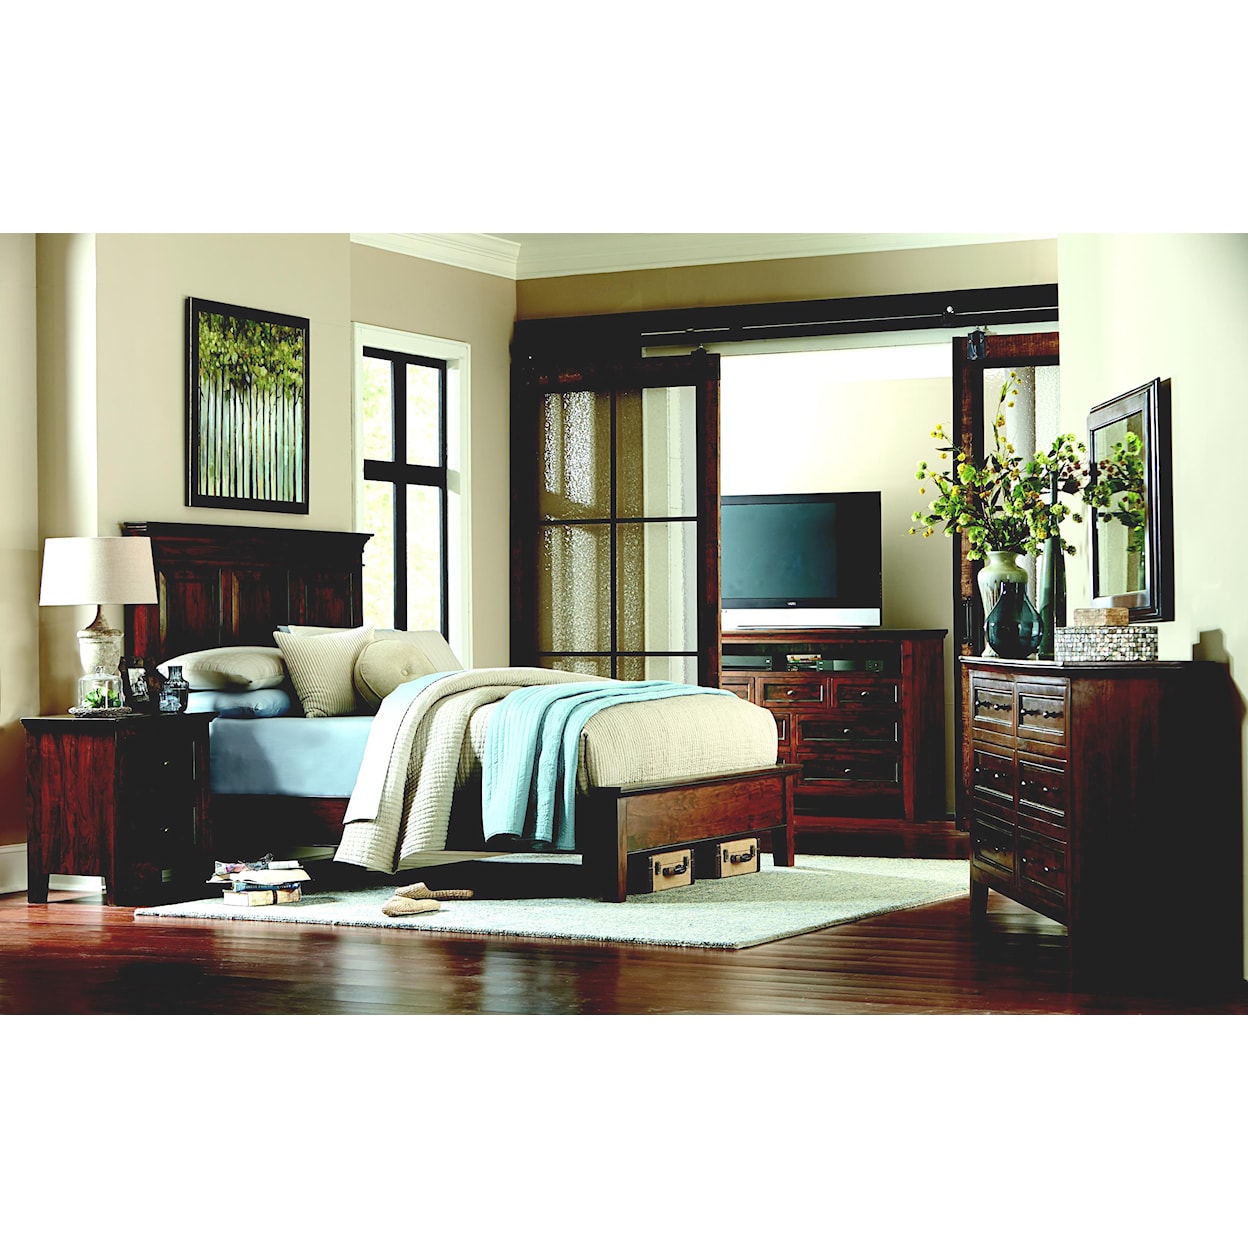 Home Trends & Design FTU King Bedroom Group